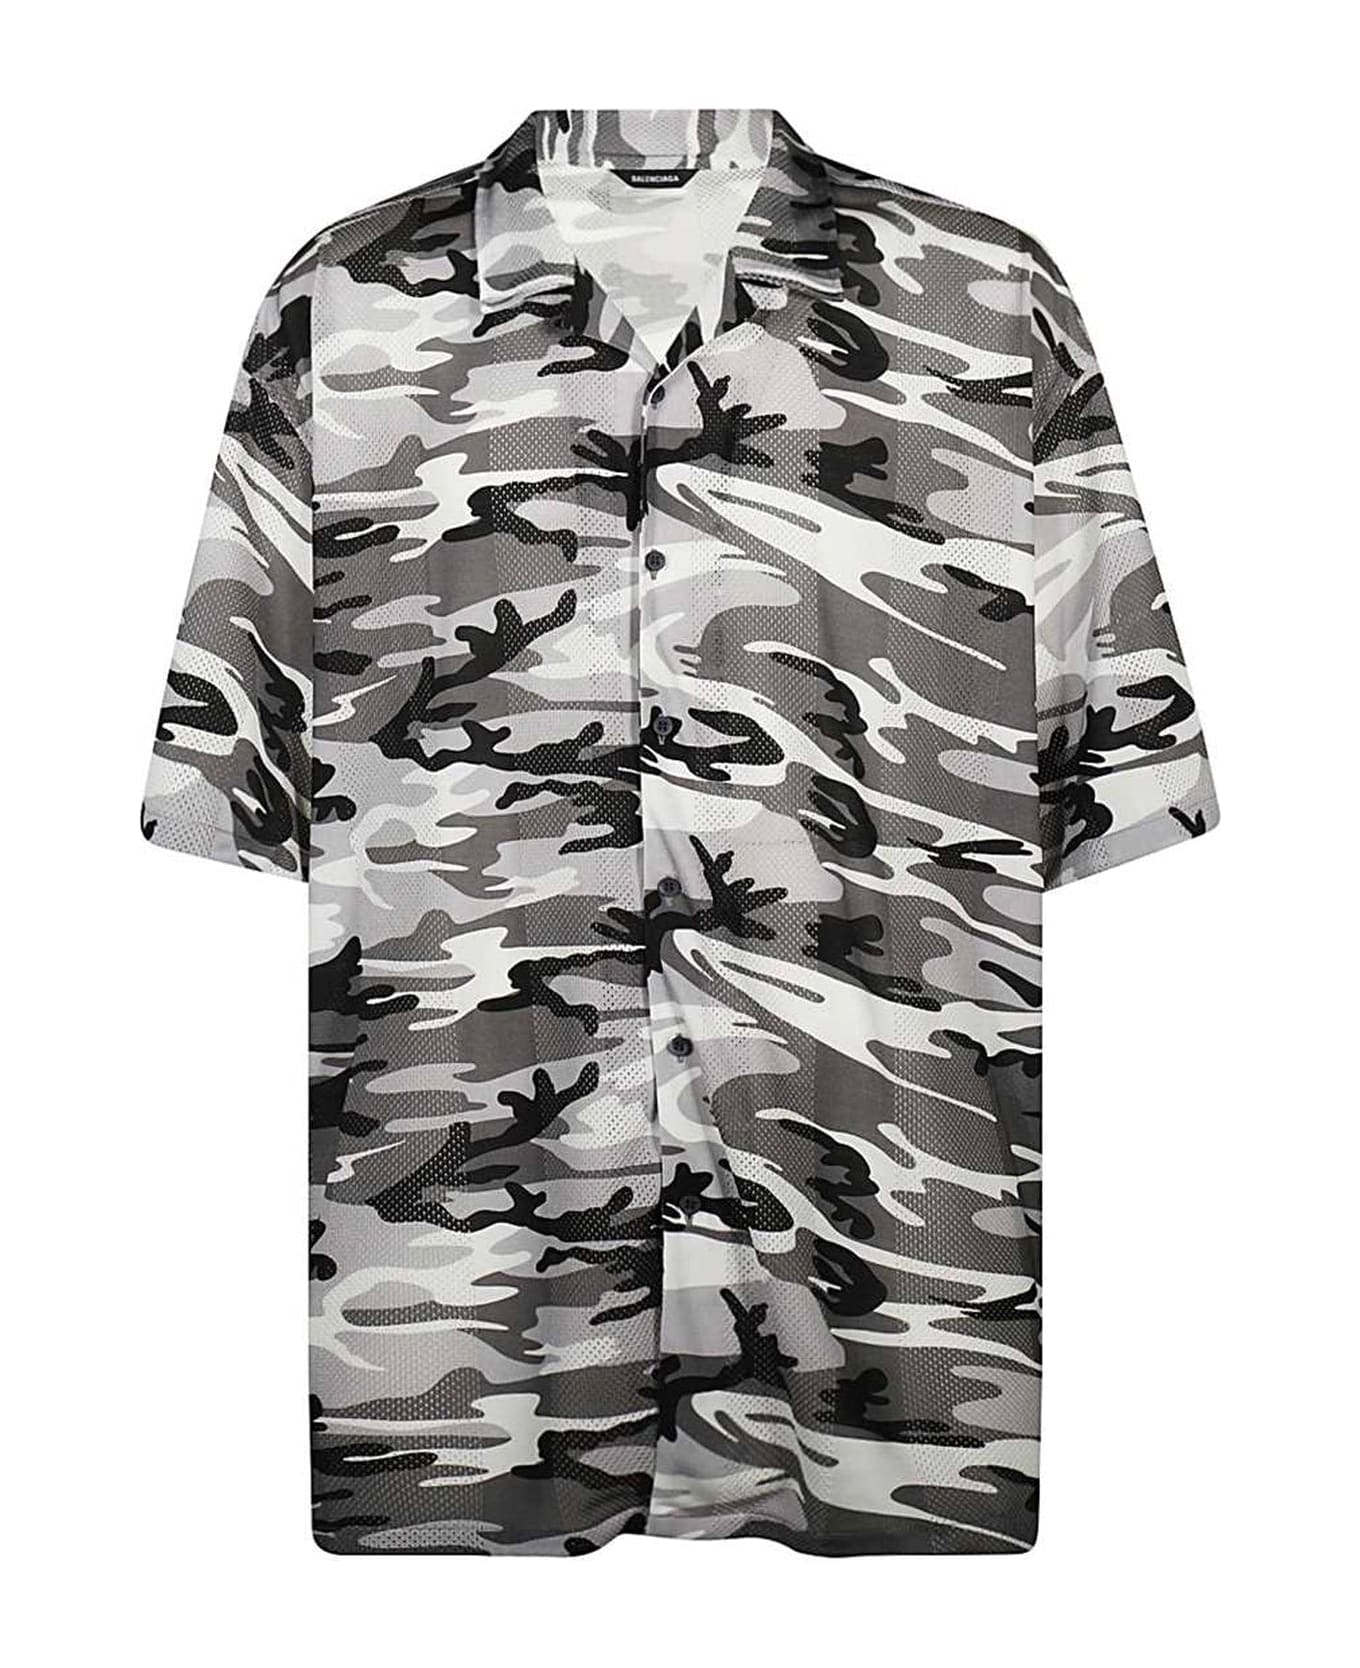 Balenciaga Camouflage Print Shirt - Gray シャツ